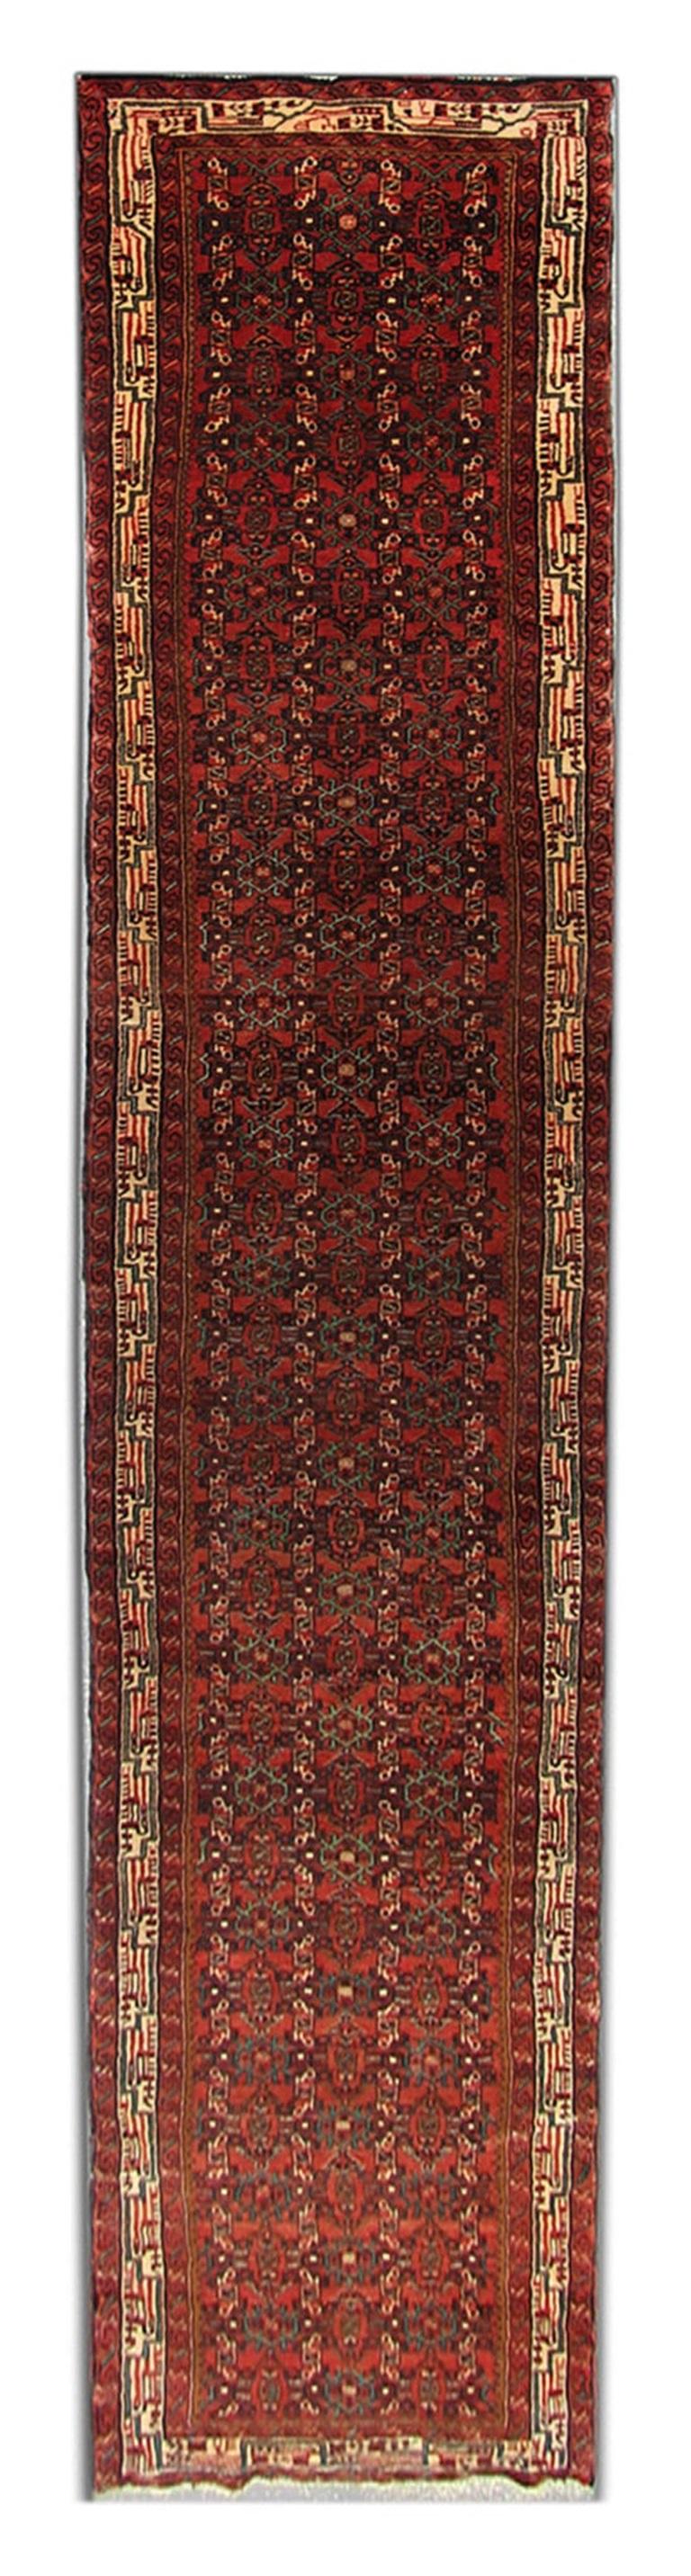 Persian Vintage Oriental Runner Rug, Deep Red Stair Runner, Wool Rug For Sale